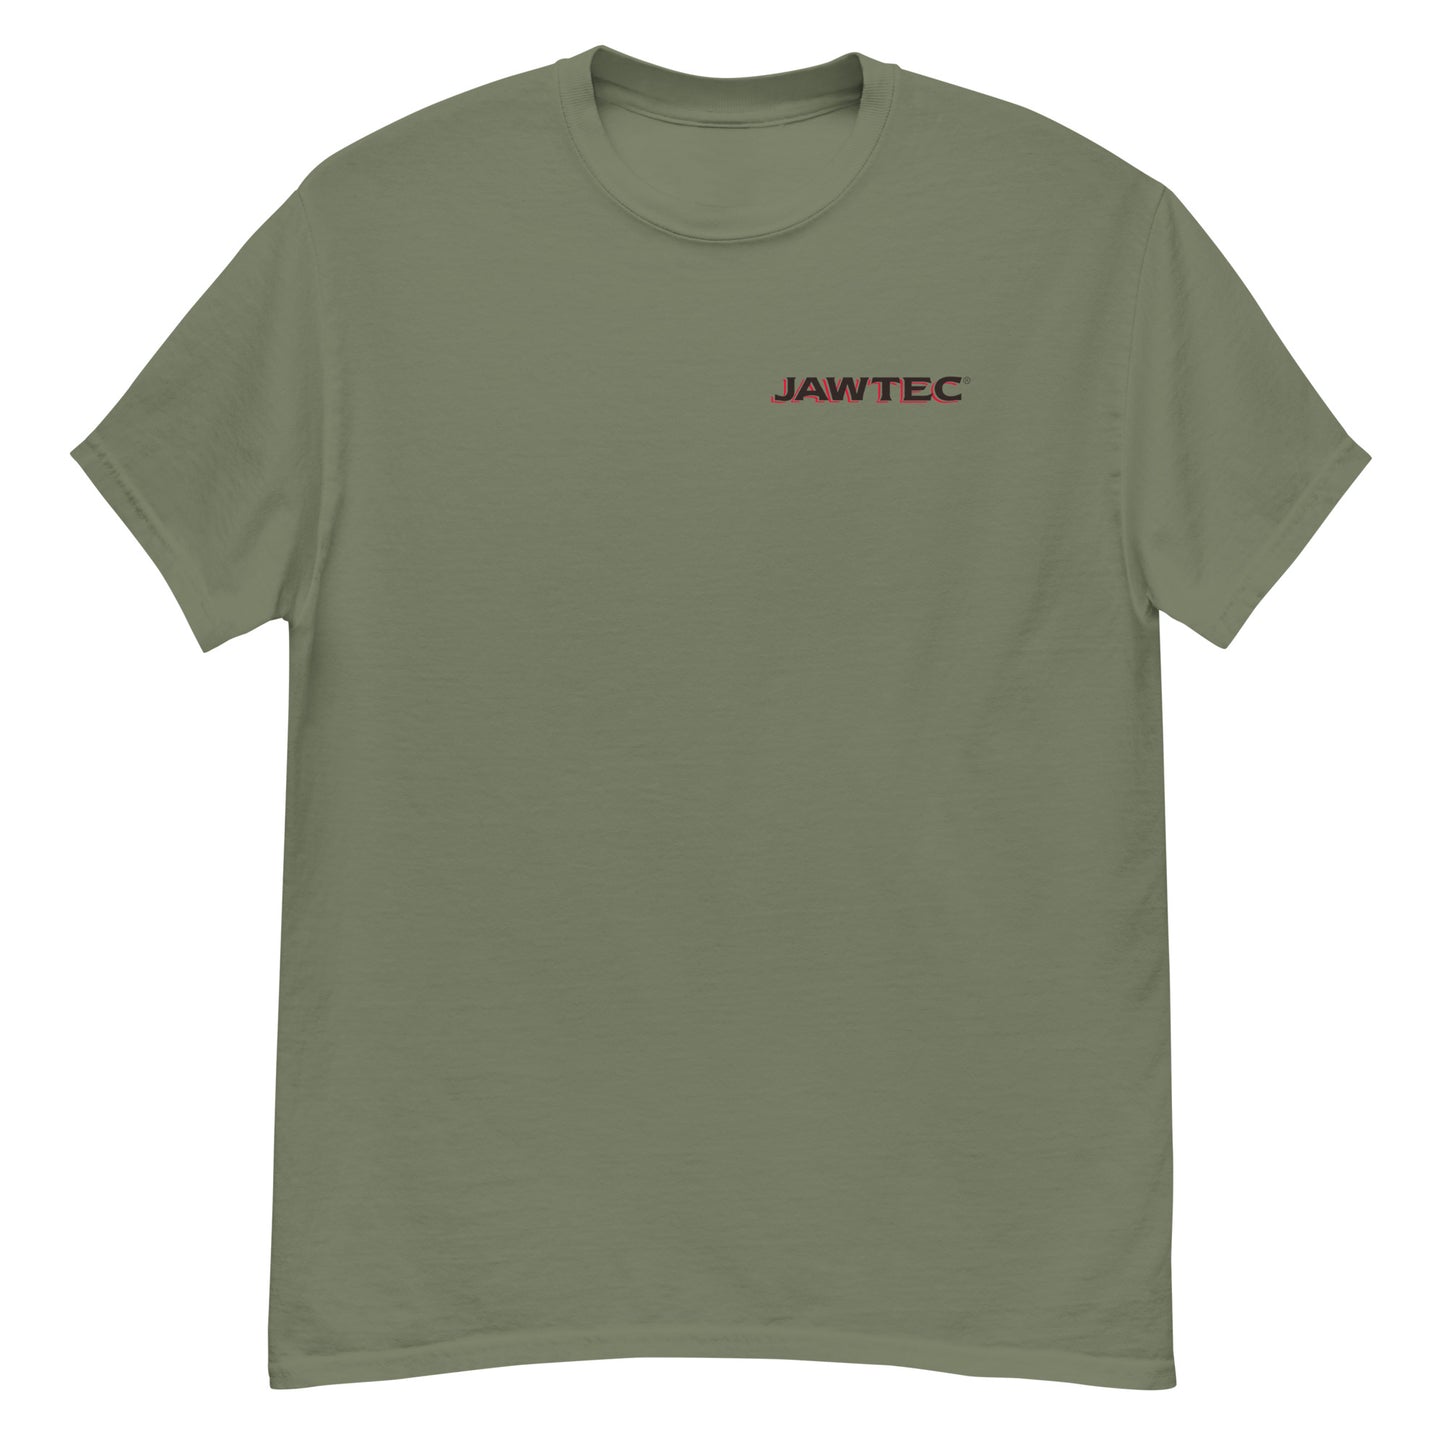 Jawtec Shirt